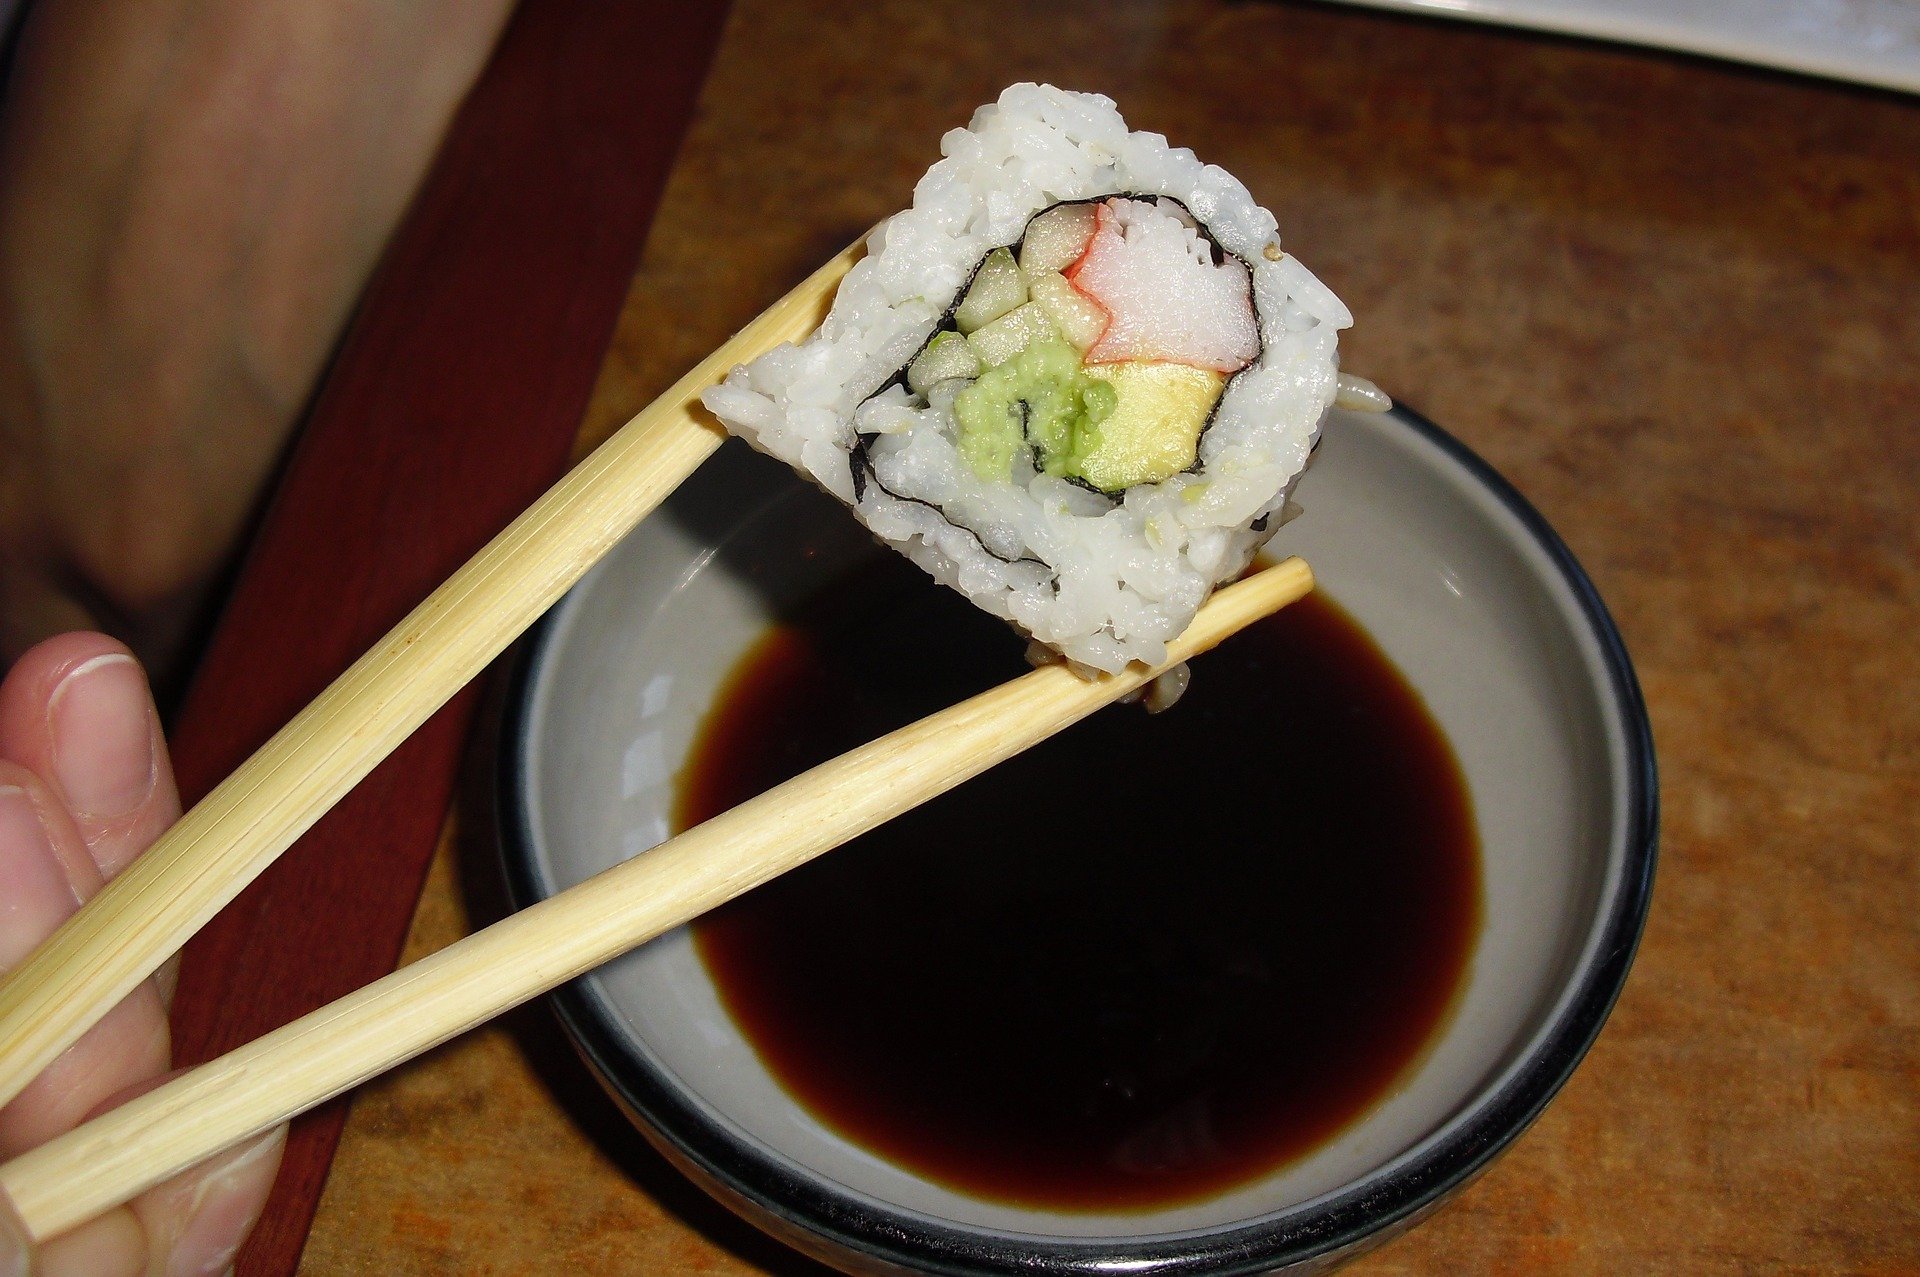 sosy quiz wiedzy o jedzeniu przepisy składniki ketchup majonez musztarda słodycze sos sojowy sushi